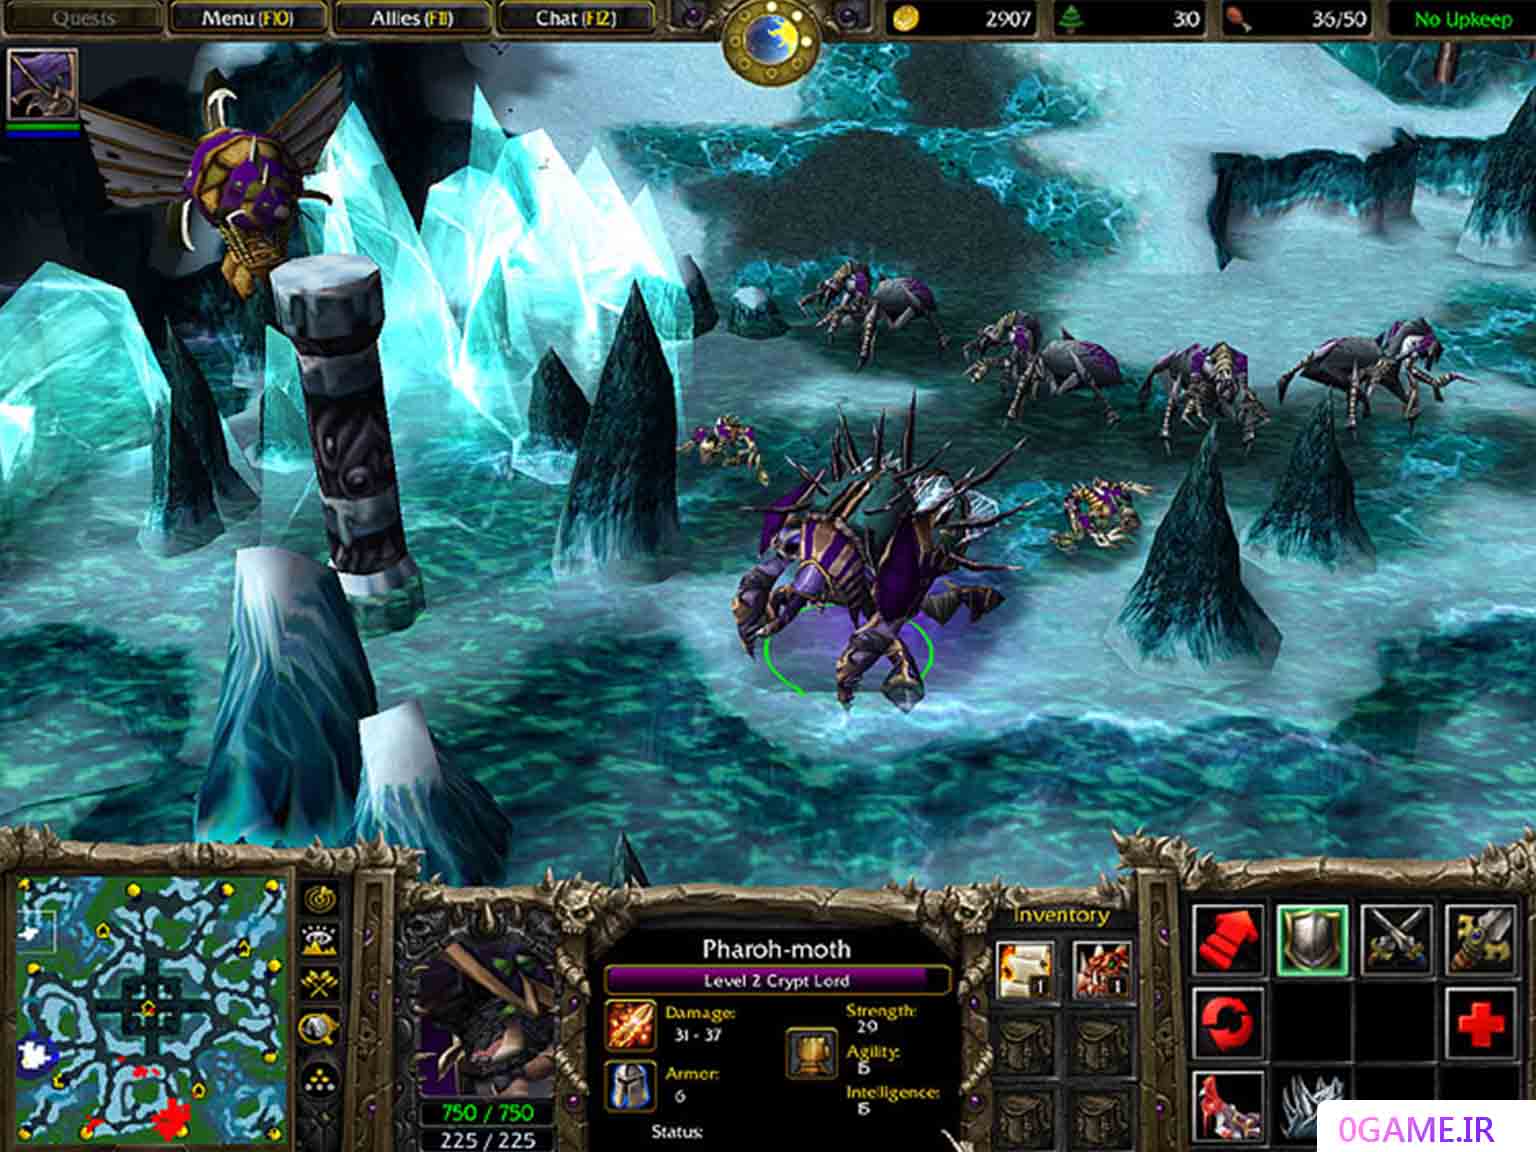 دانلود (Warcraft III) نسخه کامل برای کامپیوتر